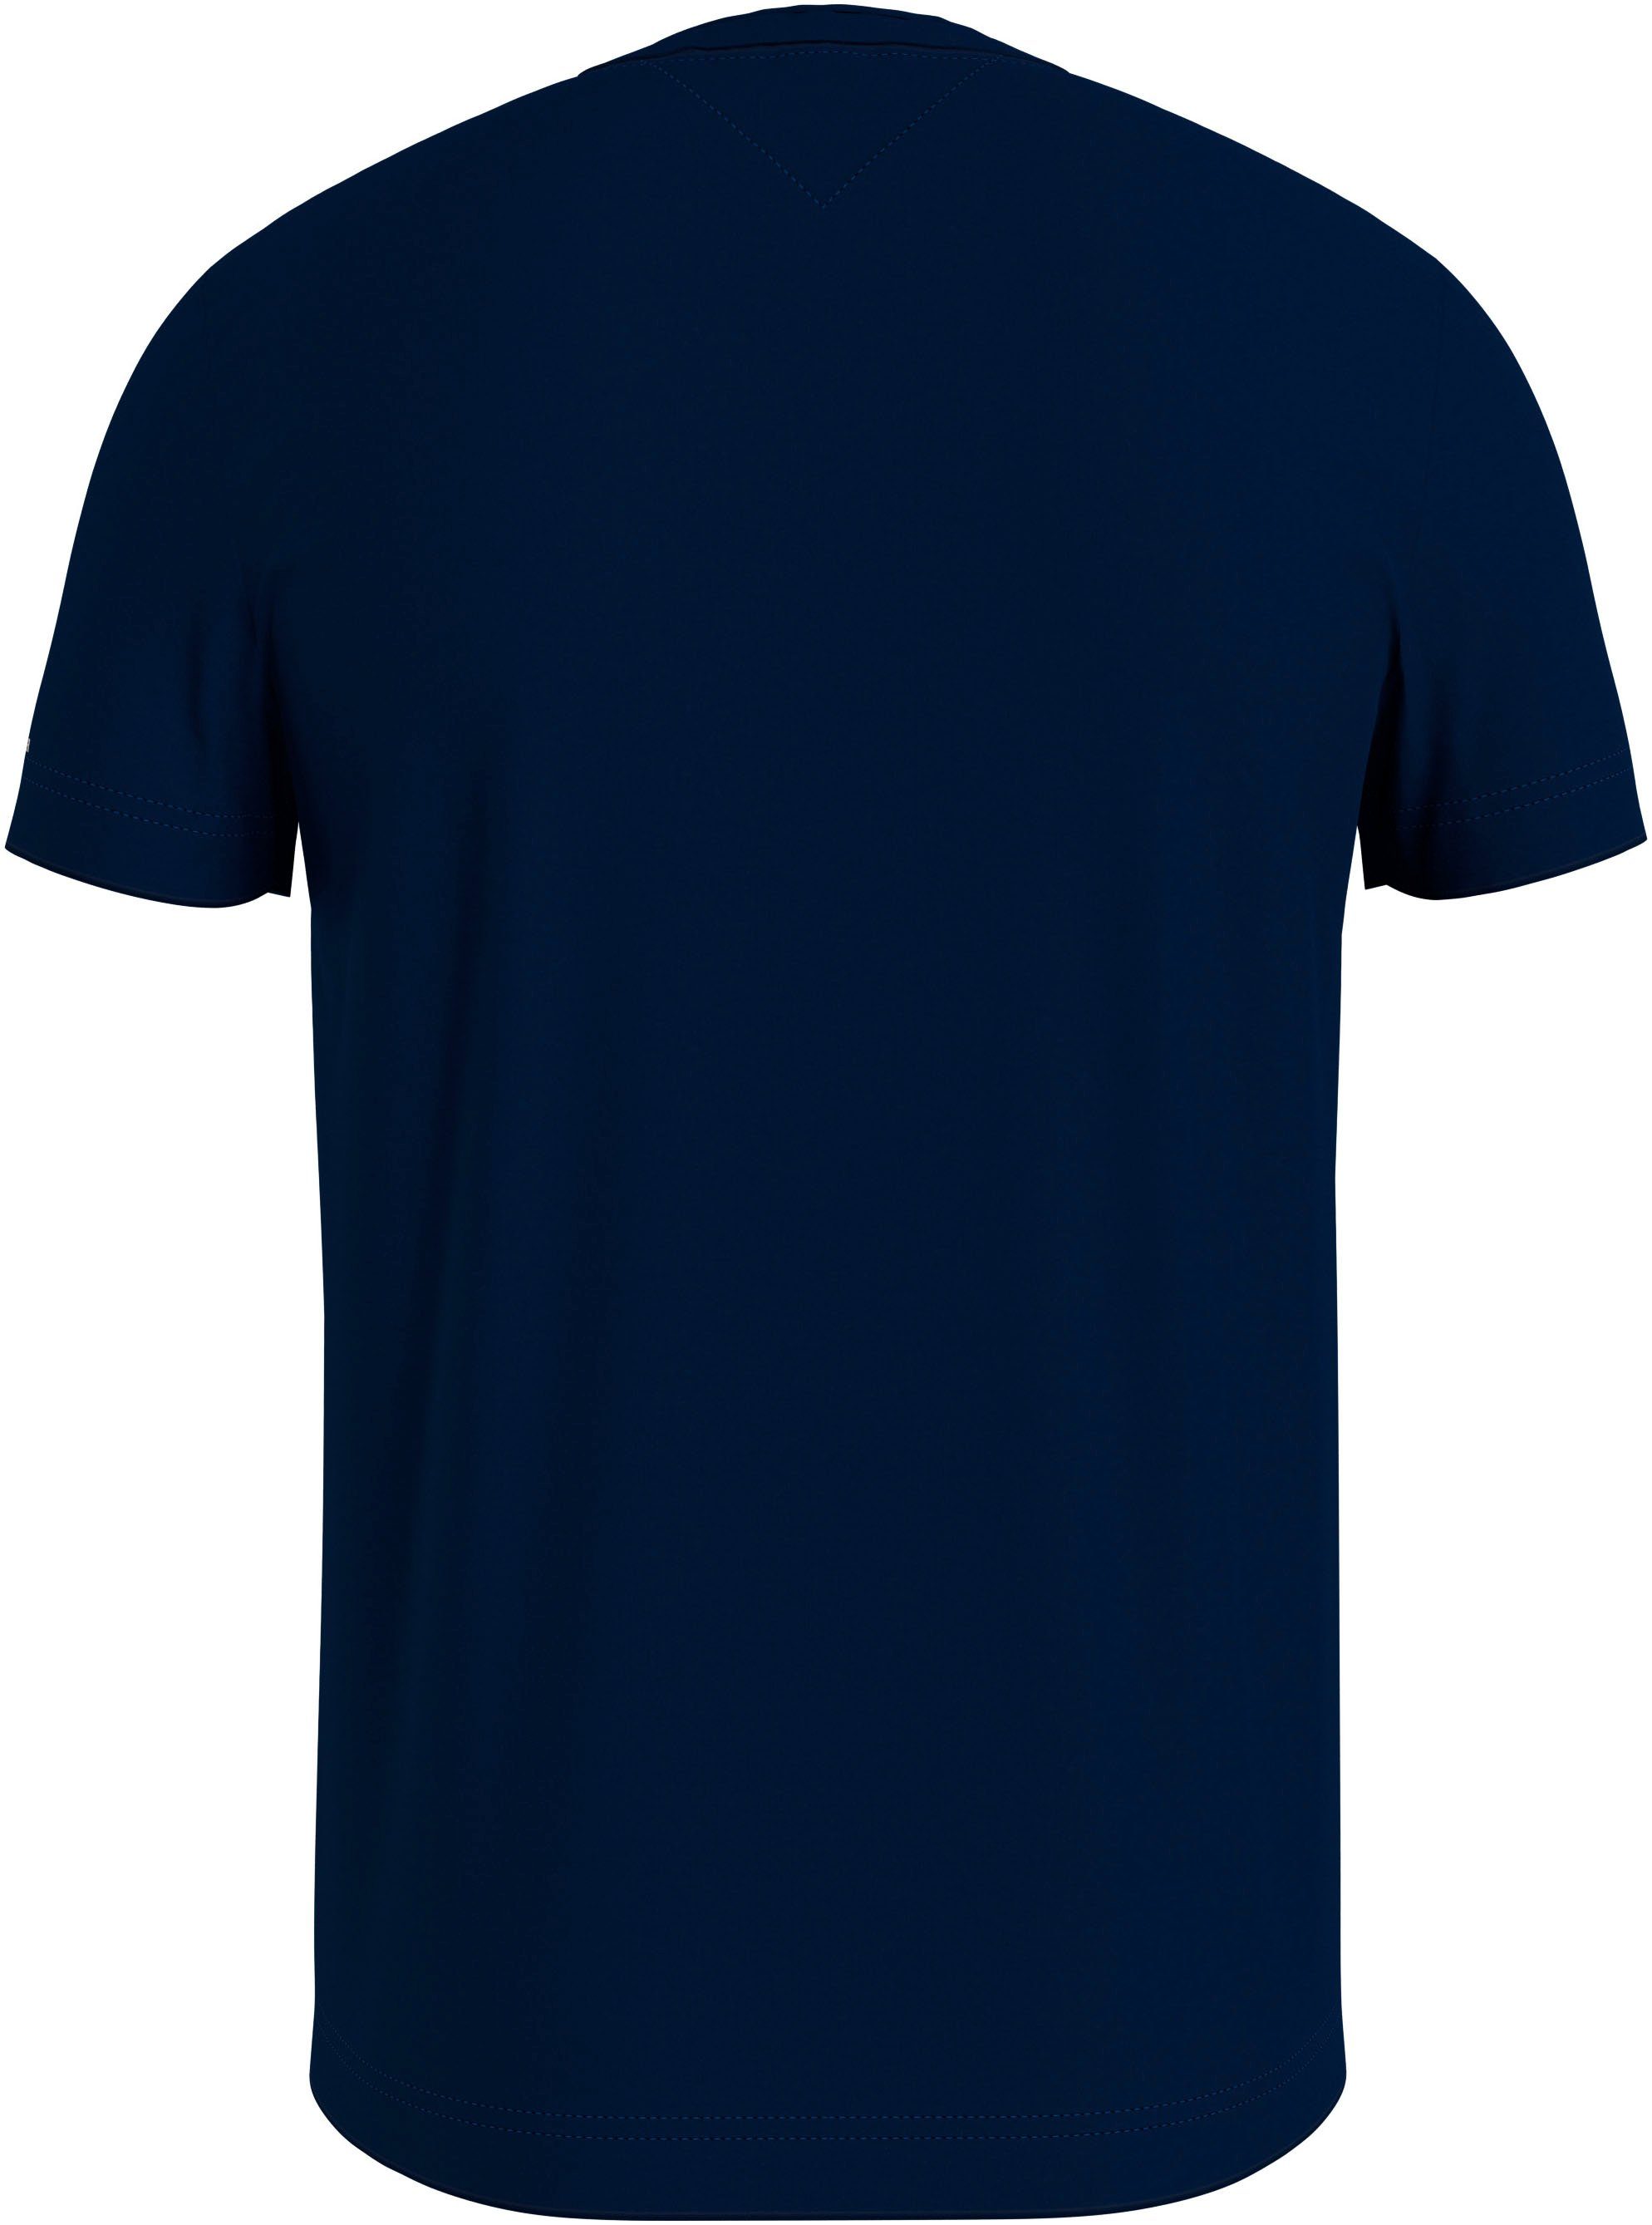 Tommy Hilfiger T-Shirt TOMMY Sky Desert SLEEVE am mit LOGO Arm TEE Logoschriftzug